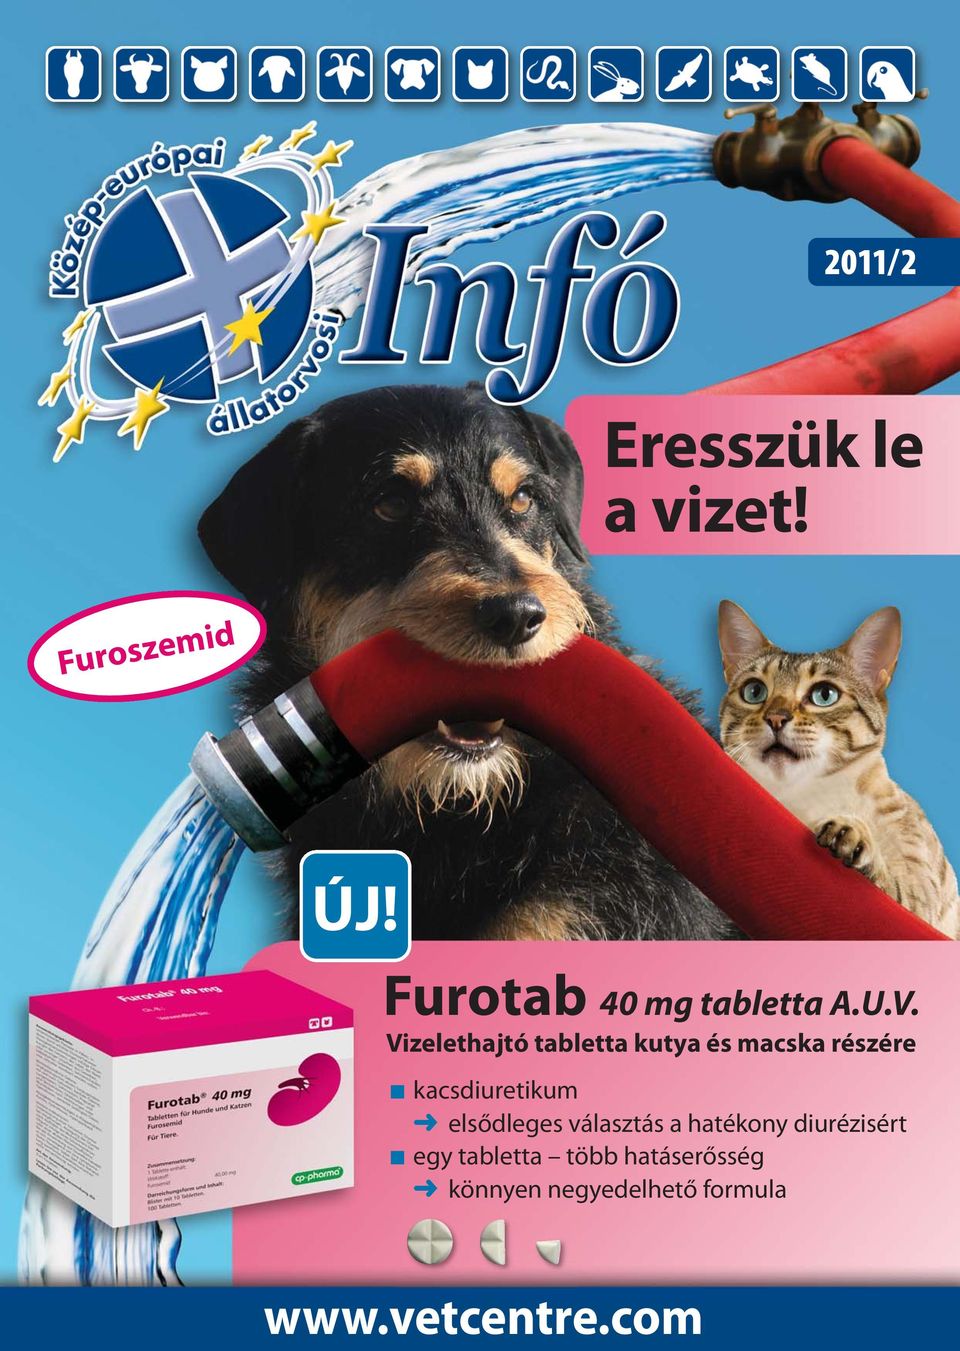 Eresszük le a vizet! ÚJ! Furotab 40 mg tabletta A.U.V /2. Furoszemid.  Vizelethajtó tabletta kutya és macska részére - PDF Ingyenes letöltés